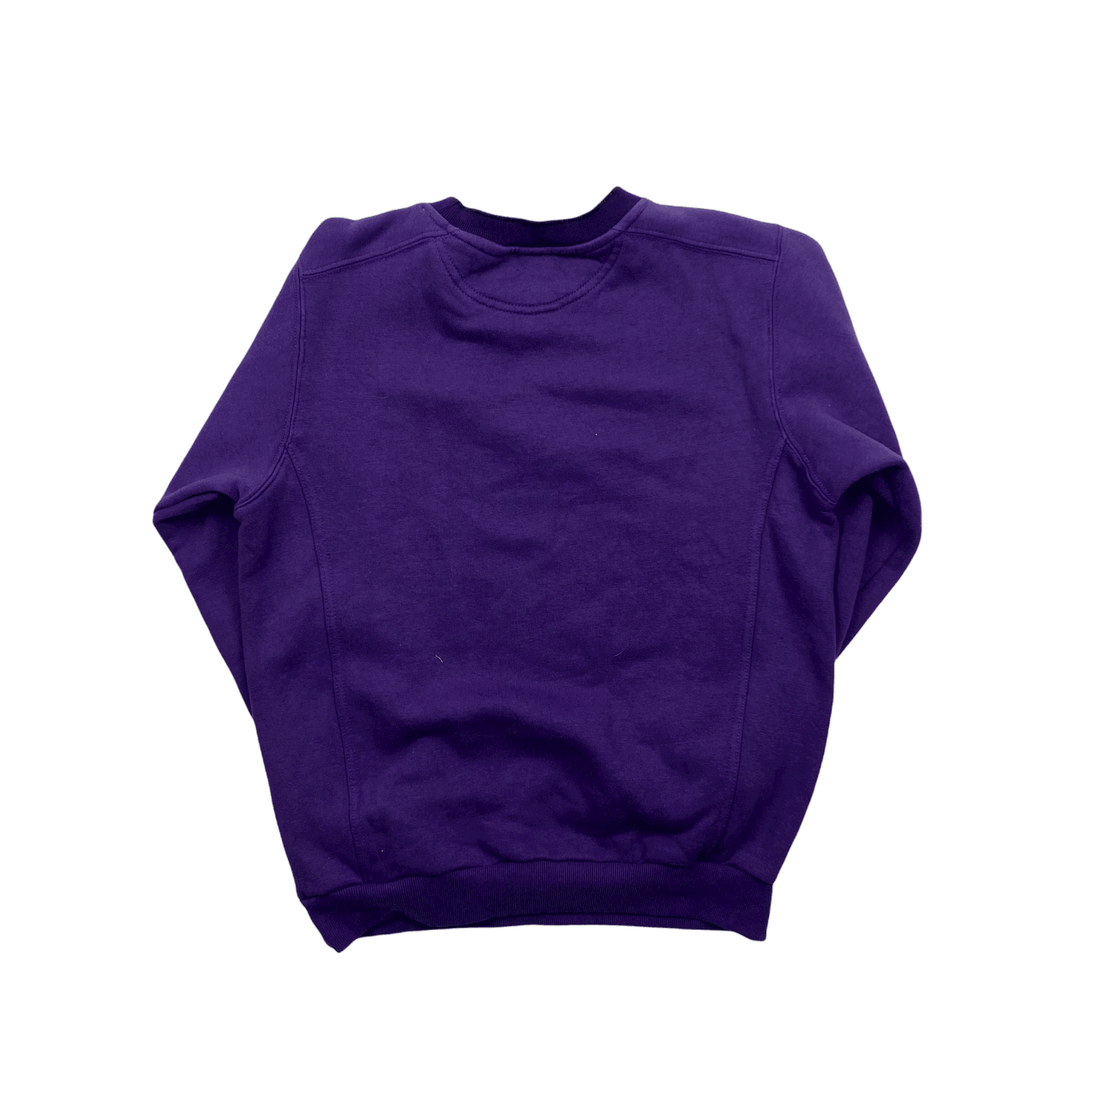 Vintage 90s Women's Purple Nike Large Logo Sweatshirt - Small - The Streetwear Studio